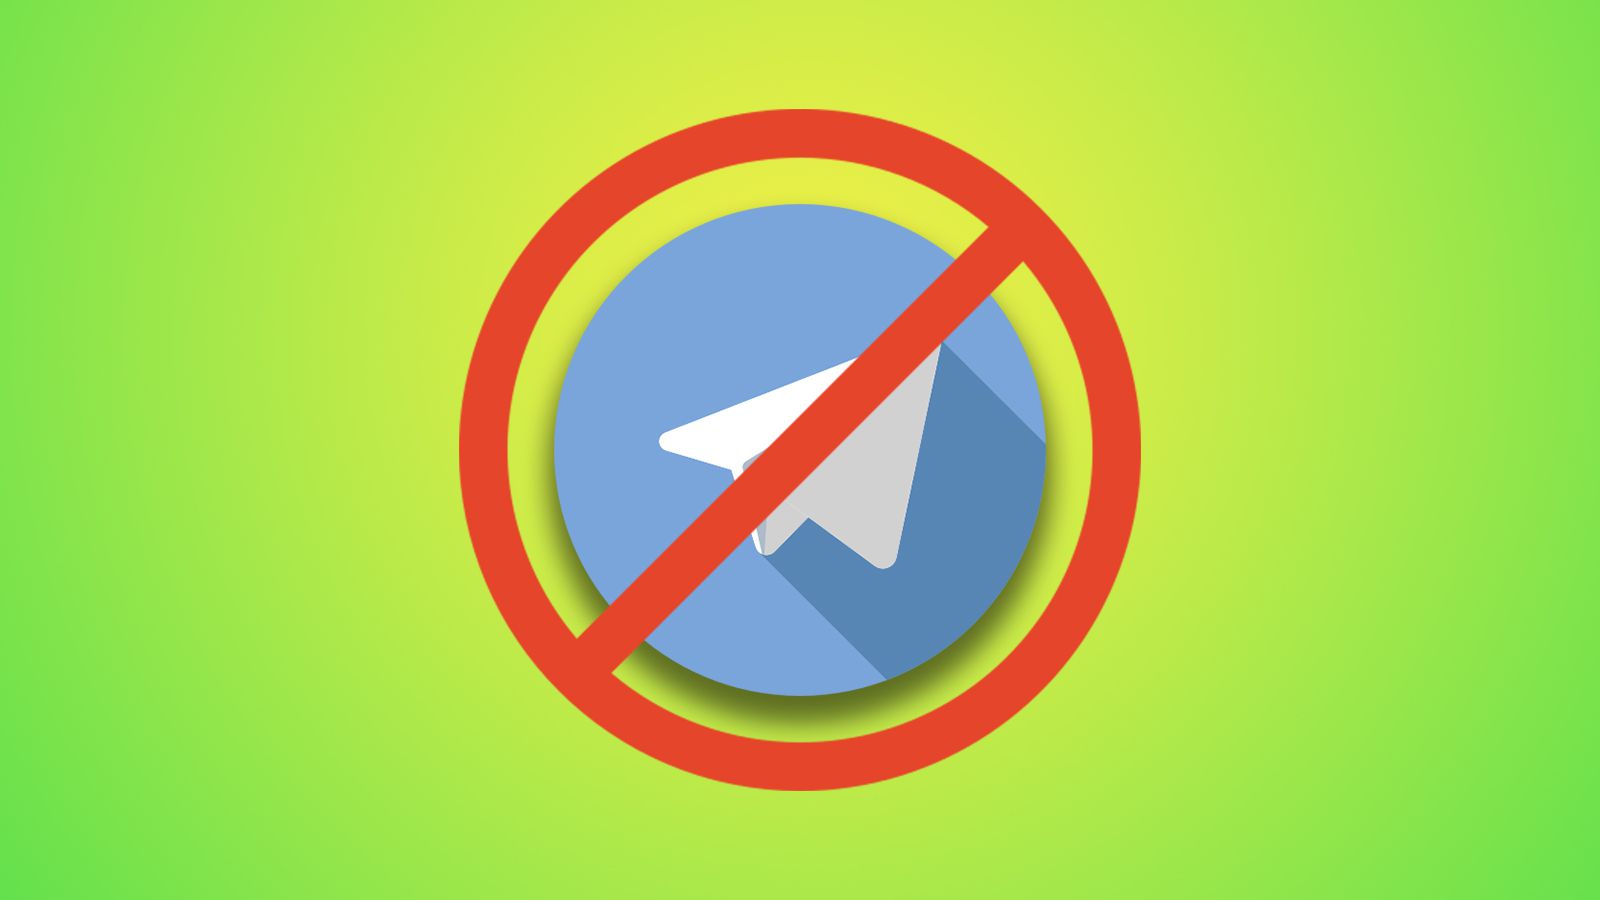 As demandas para liberar o Telegram no Brasil : r/brasilivre